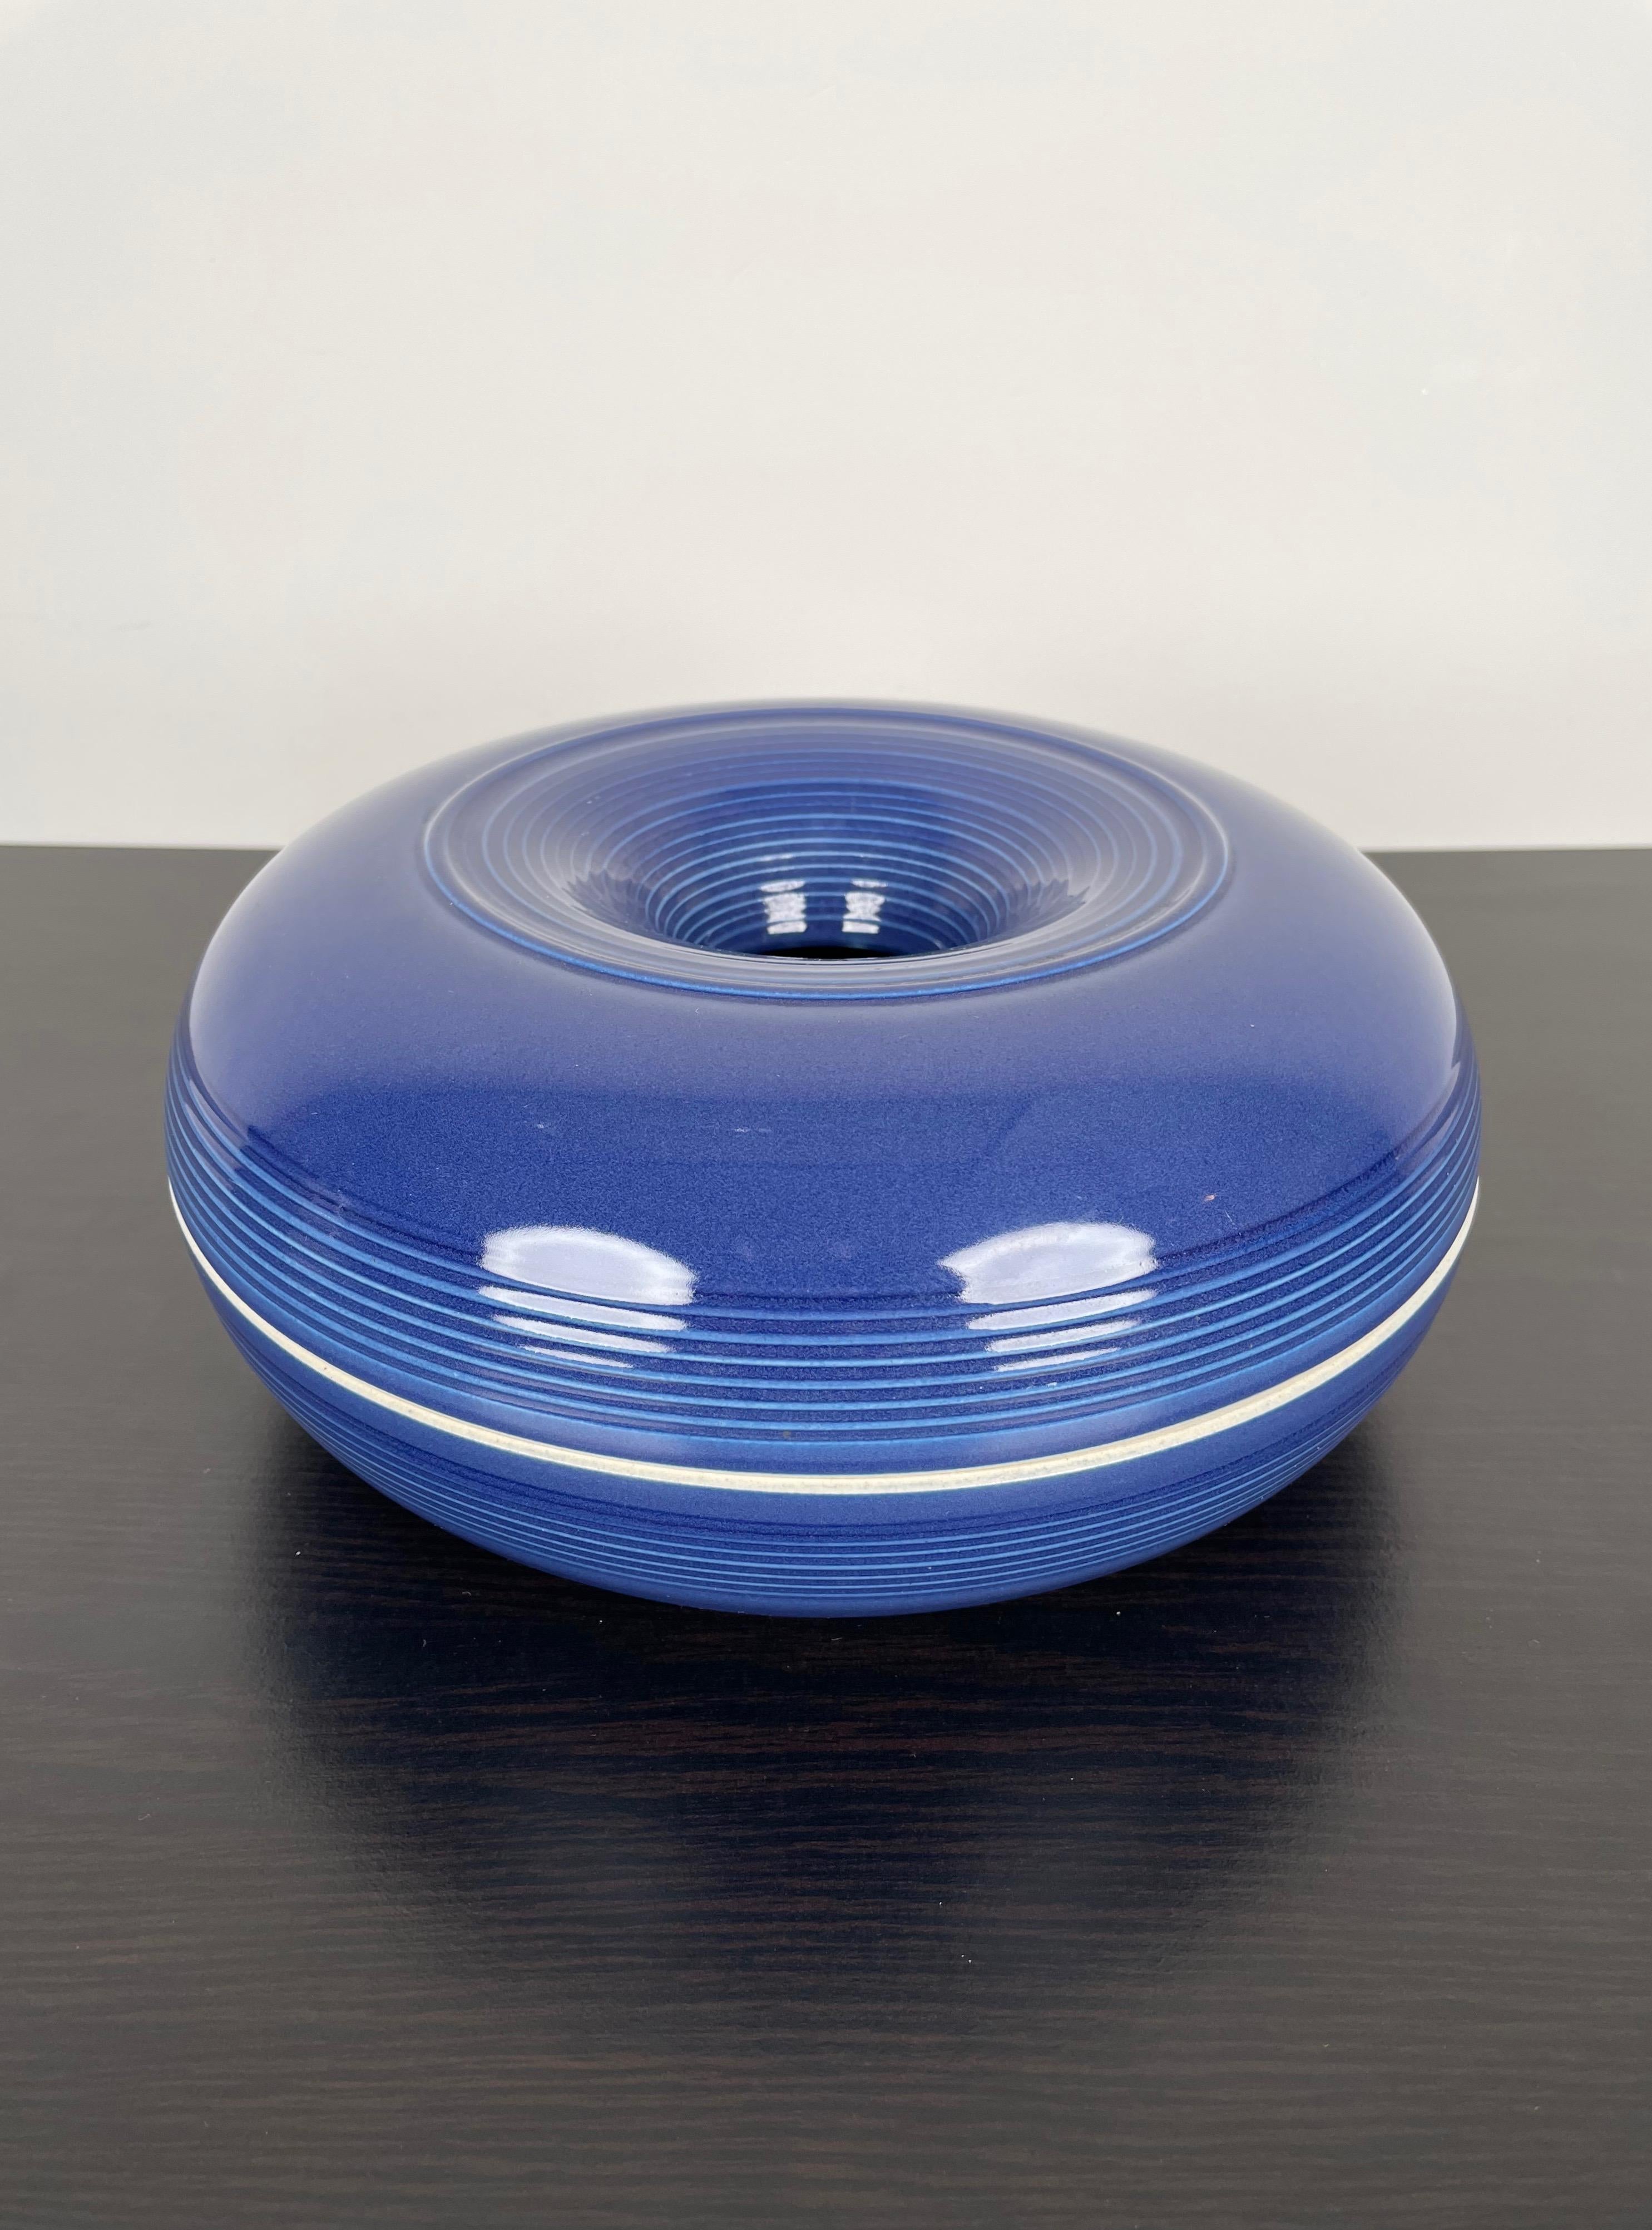 Cendrier en céramique bleu violet réalisé en Italie dans les années 1970 par le designer italien Franco Bucci pour Laboratorio Pesaro. 
L'étiquette d'origine est toujours attachée au fond du cendrier.